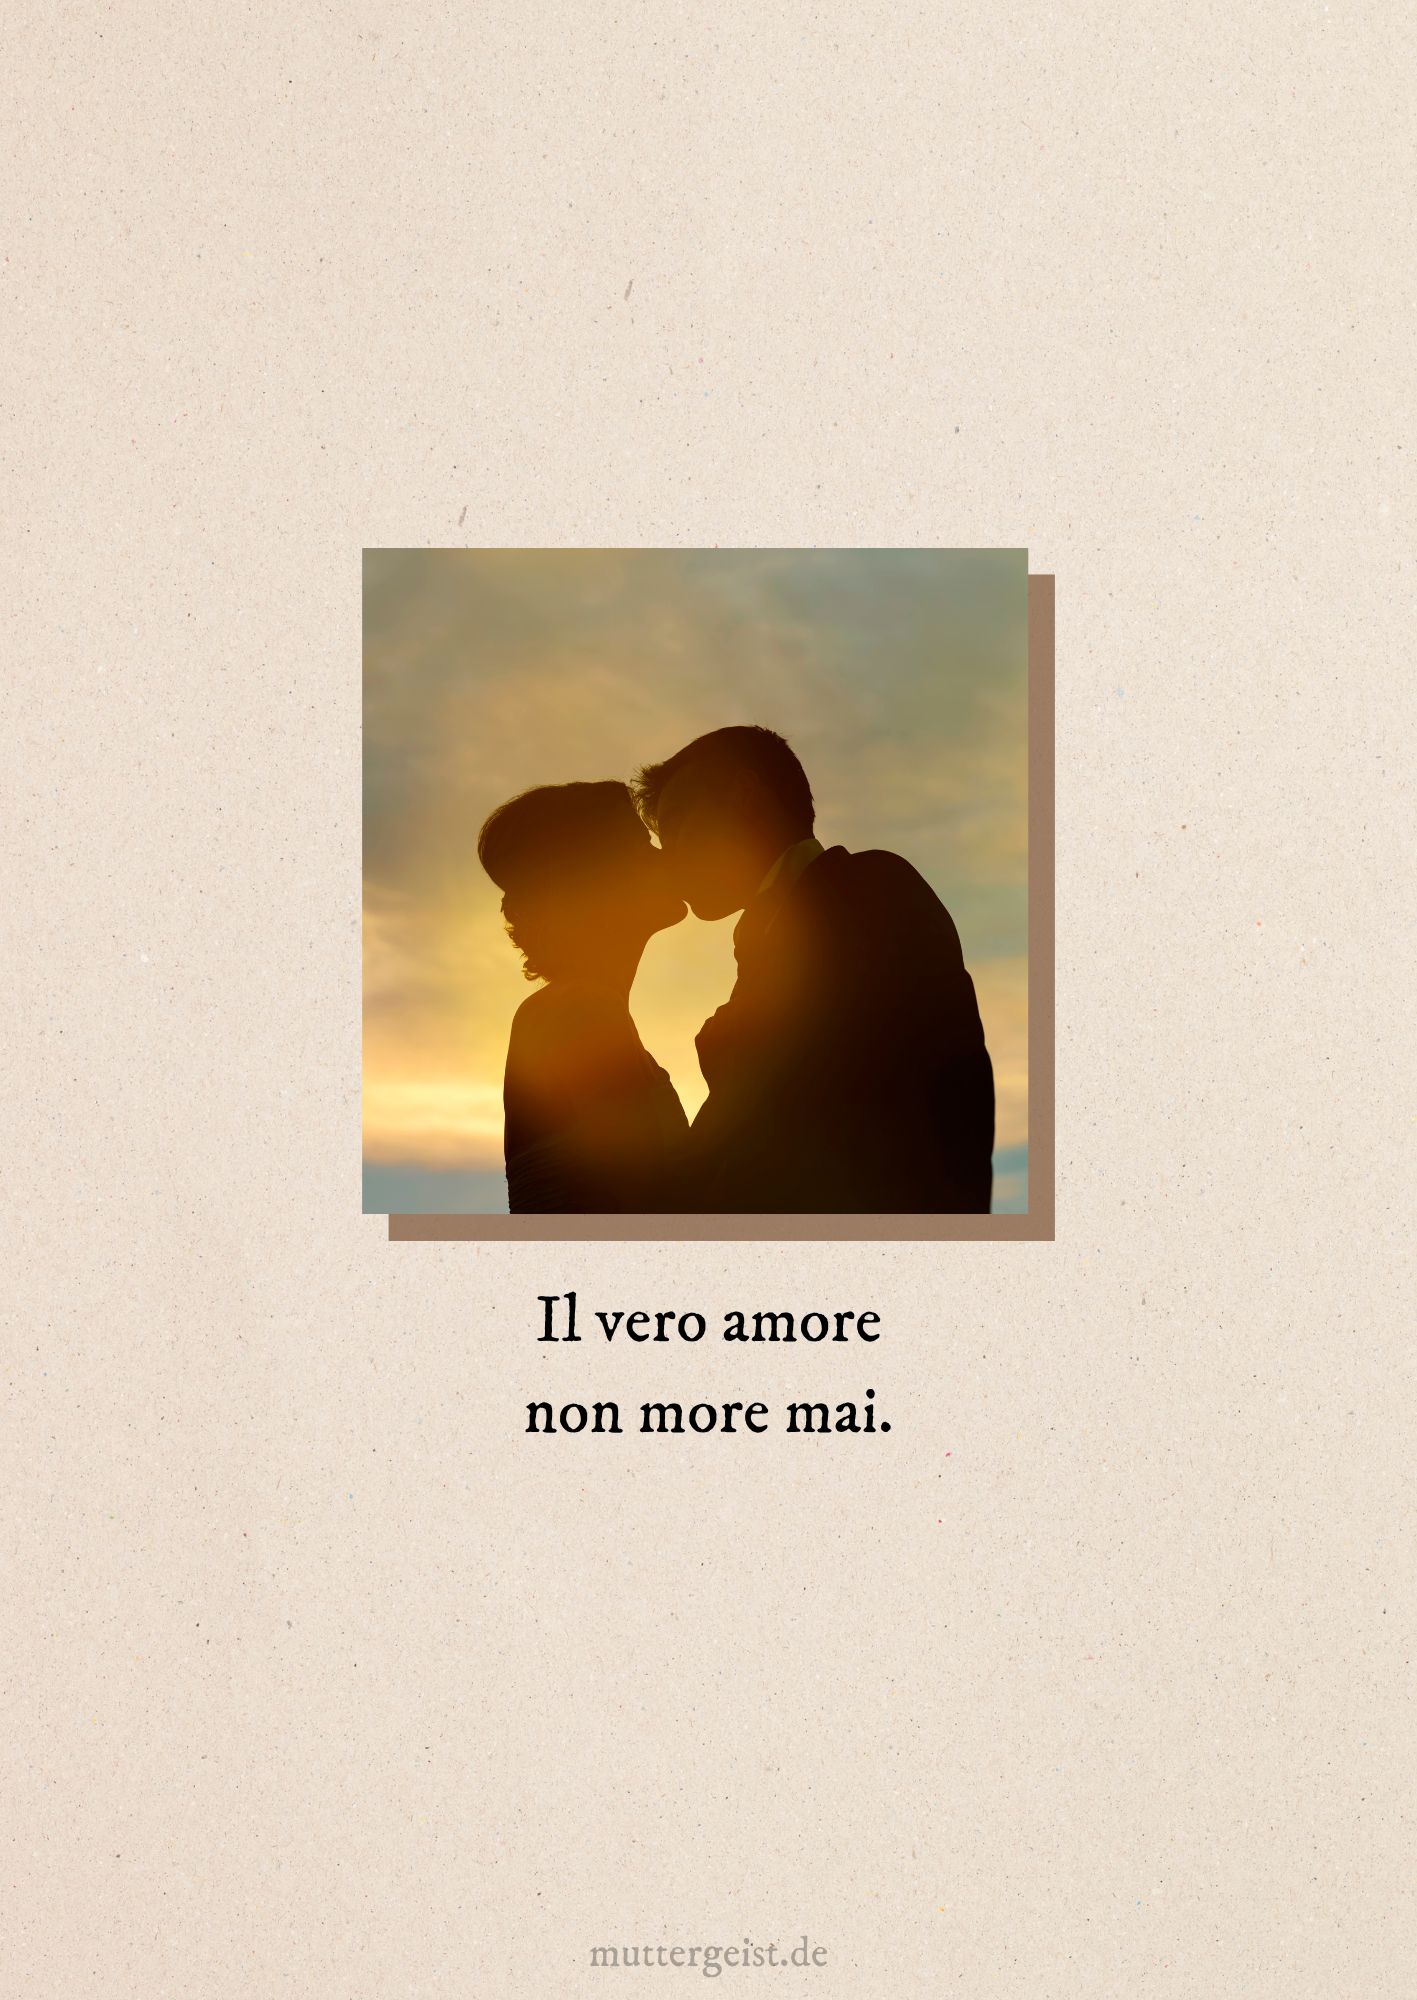 Il vero amore non more mai.